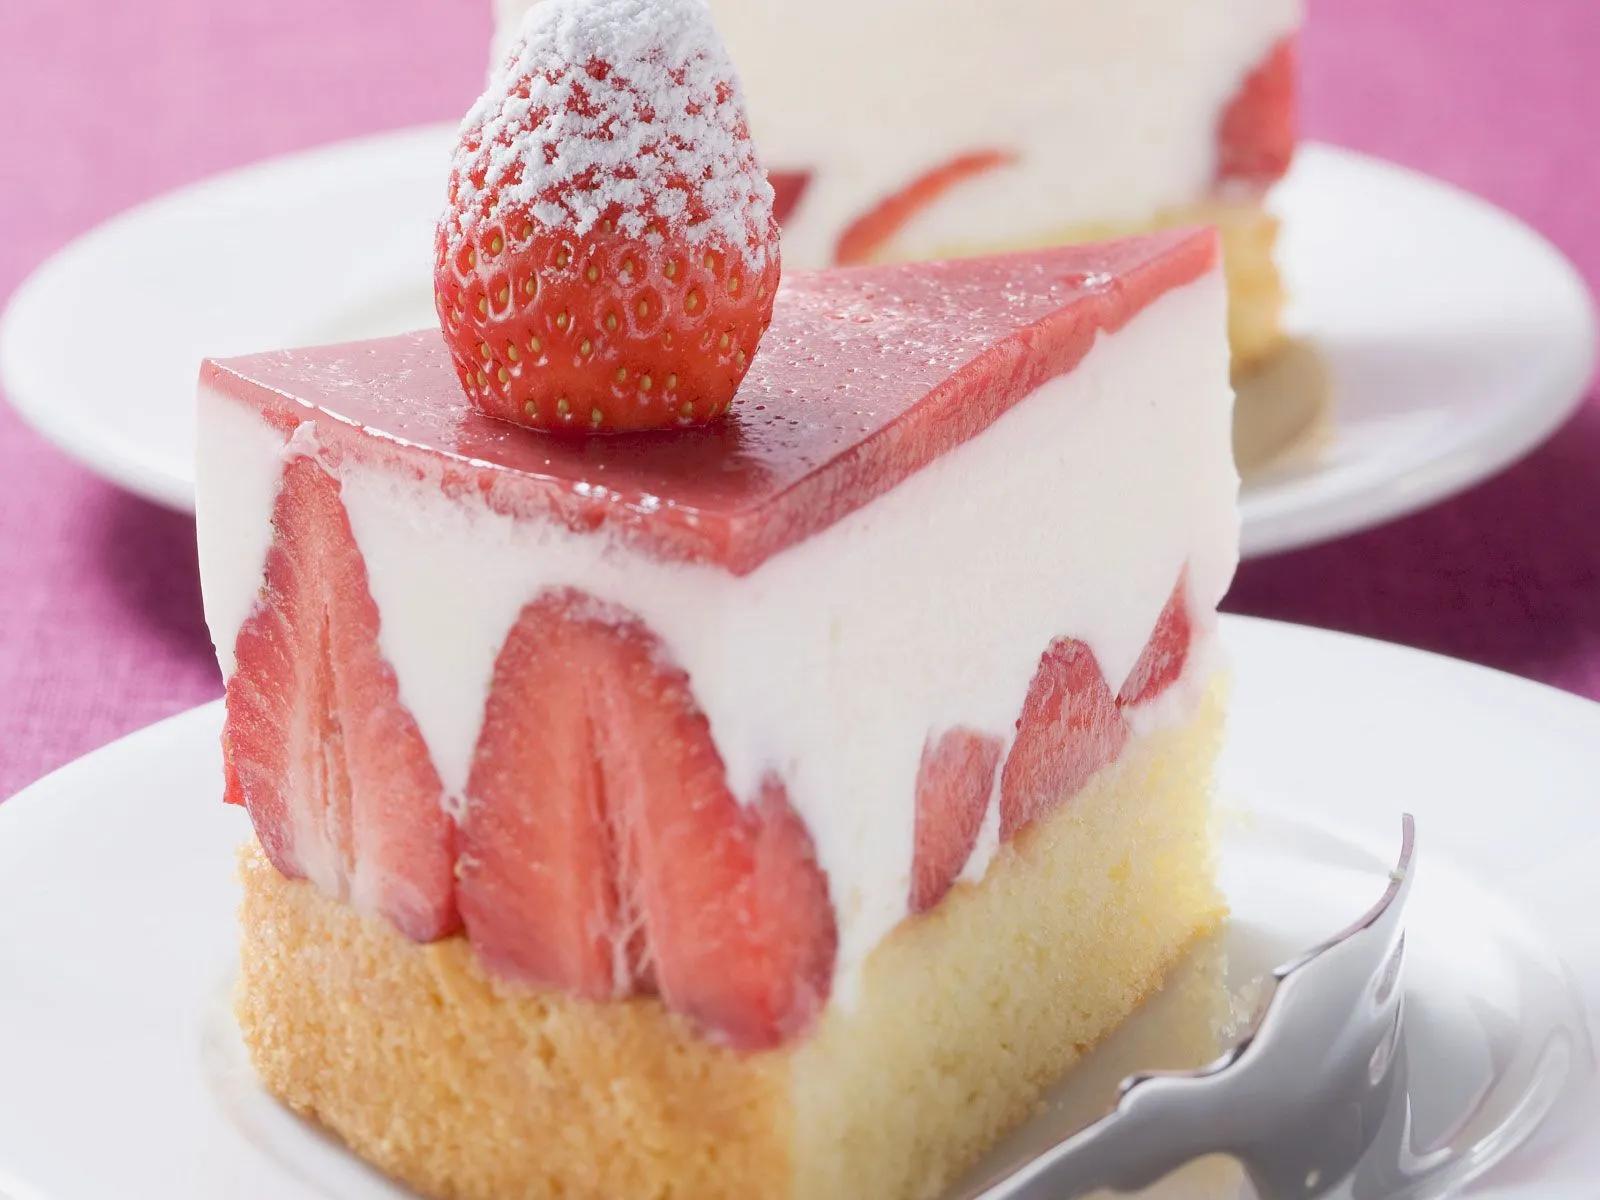 Erdbeertorte mit Joghurtfüllung | Rezept | Desserts sauber essen ...